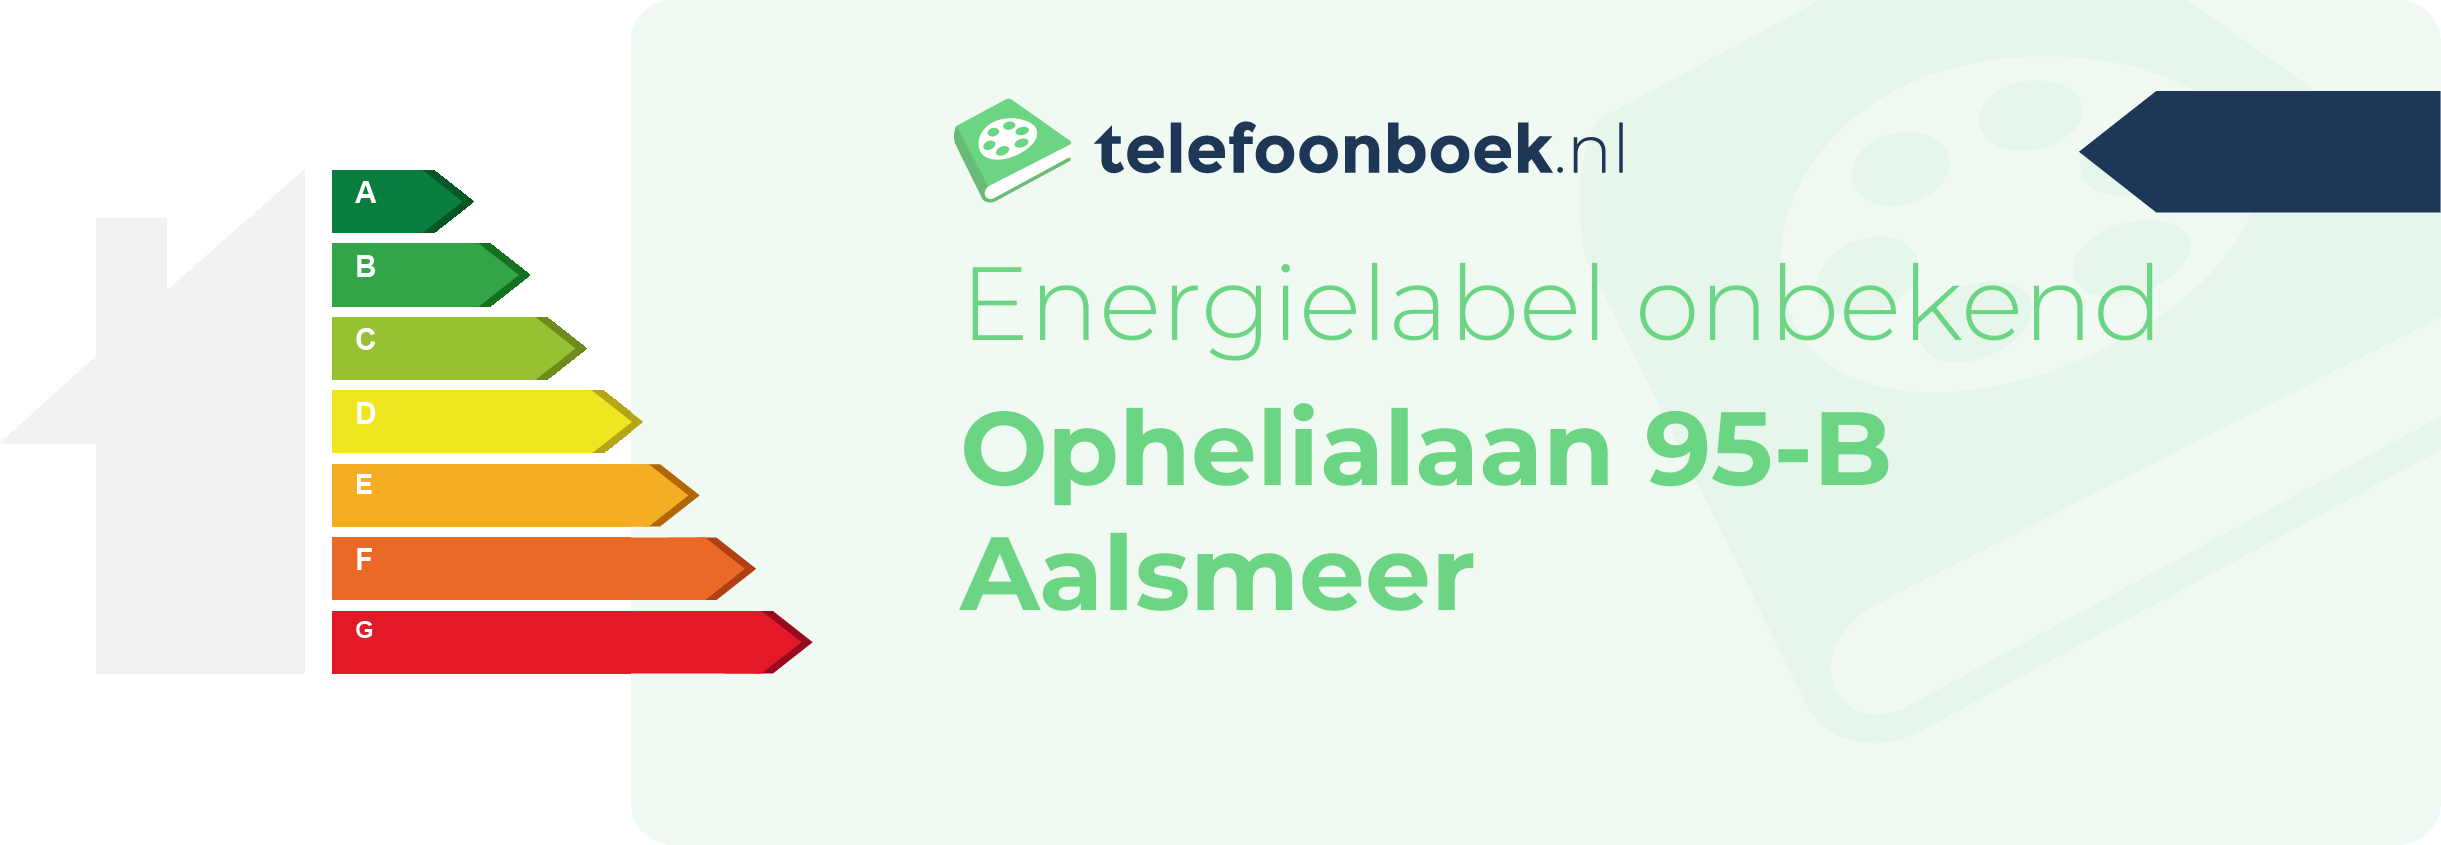 Energielabel Ophelialaan 95-B Aalsmeer